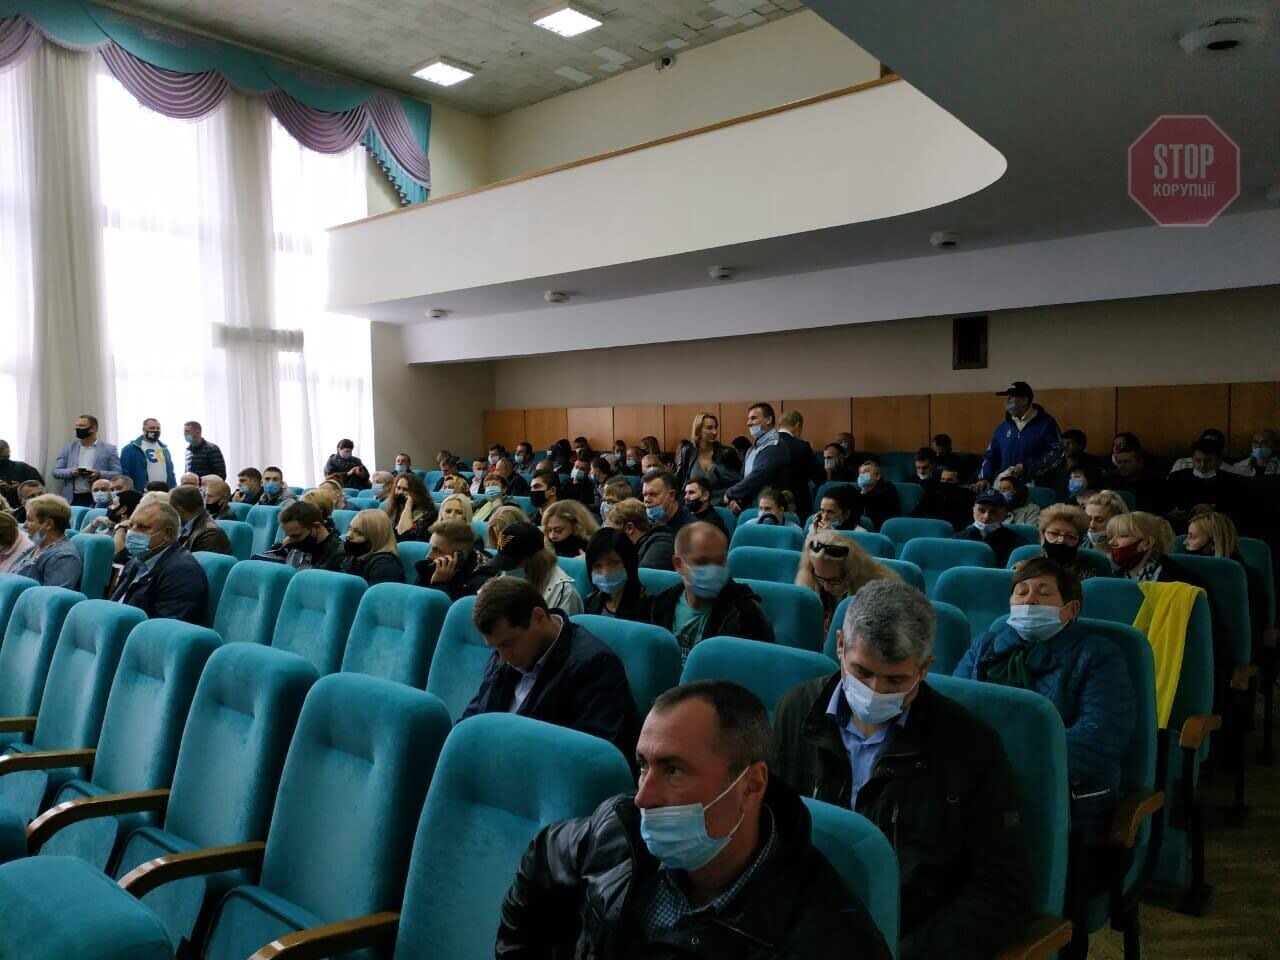  У Борисполі міська рада не змогла провести сесію. Засідання перенесли. Фото: СтопКор.